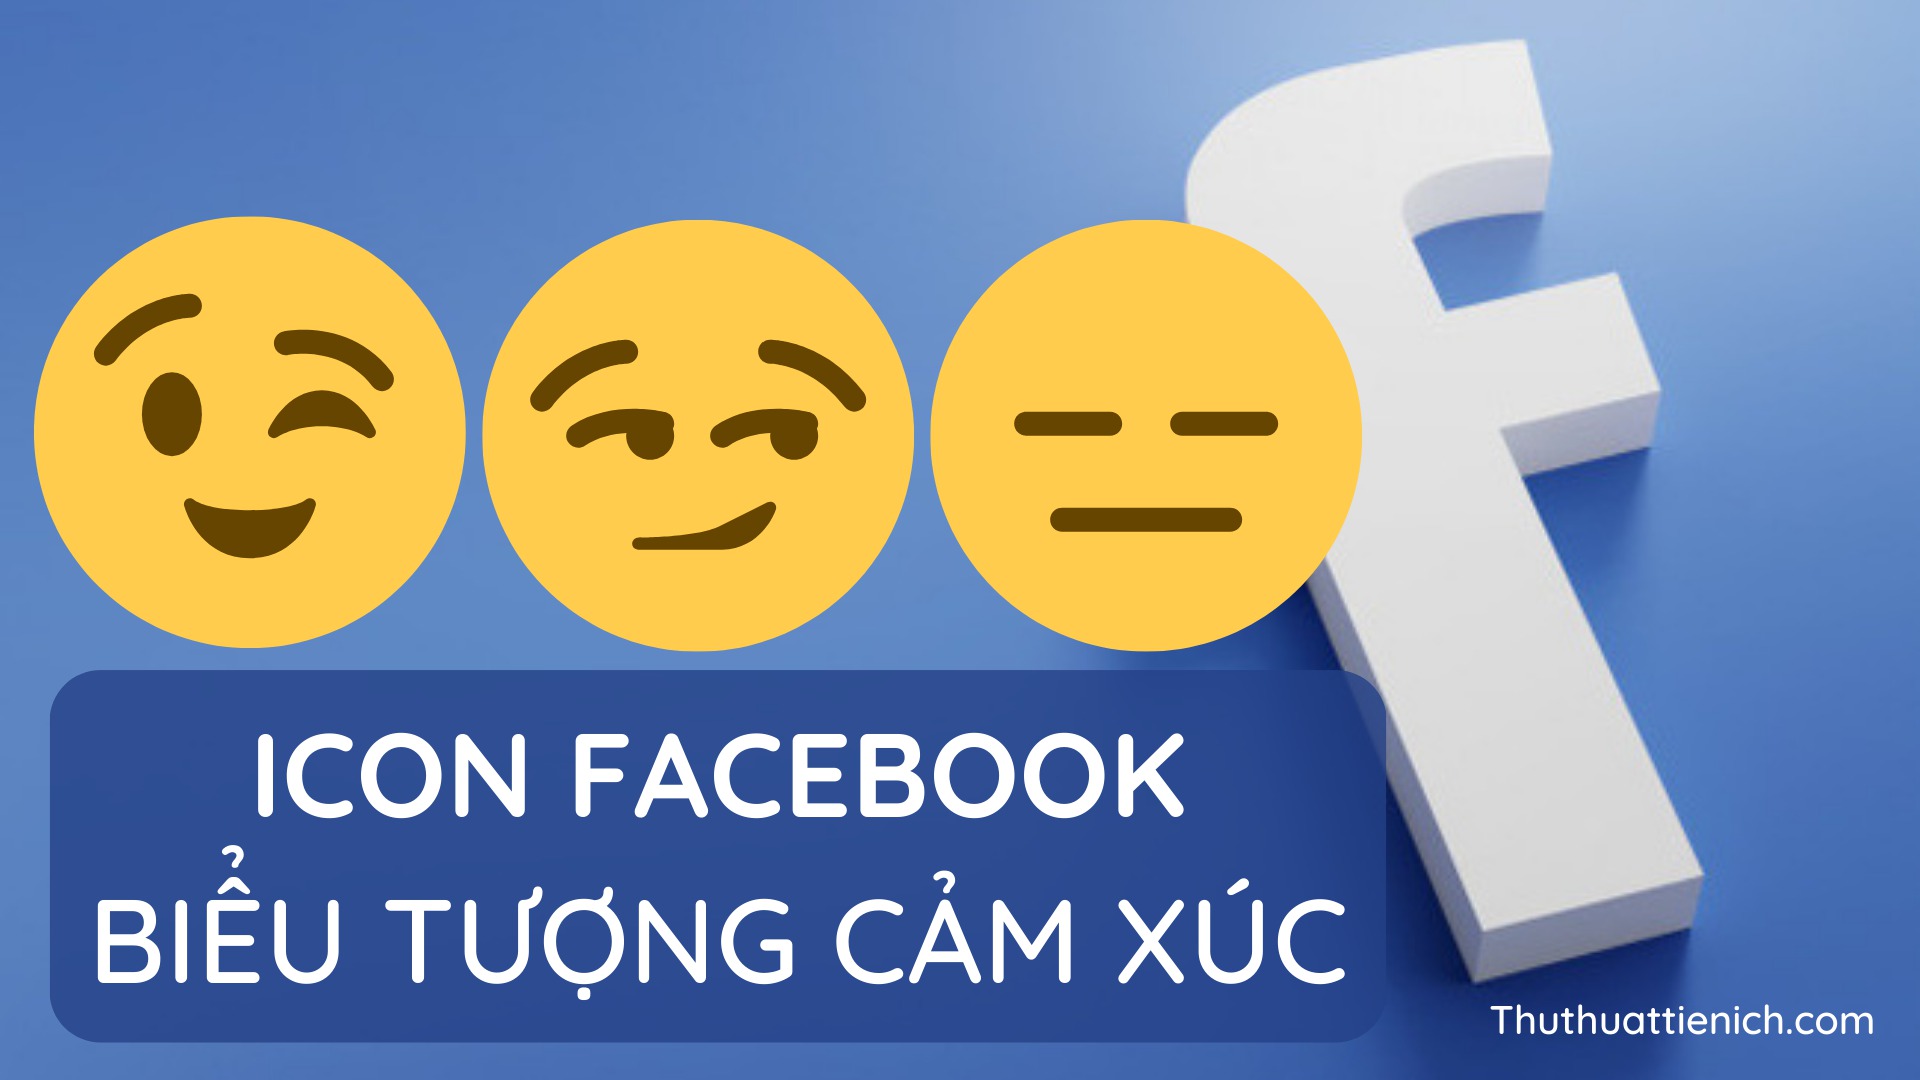  Full trọn bộ 1001 icon facebook mới nhất   Biểu tượng cảm xúc fb  